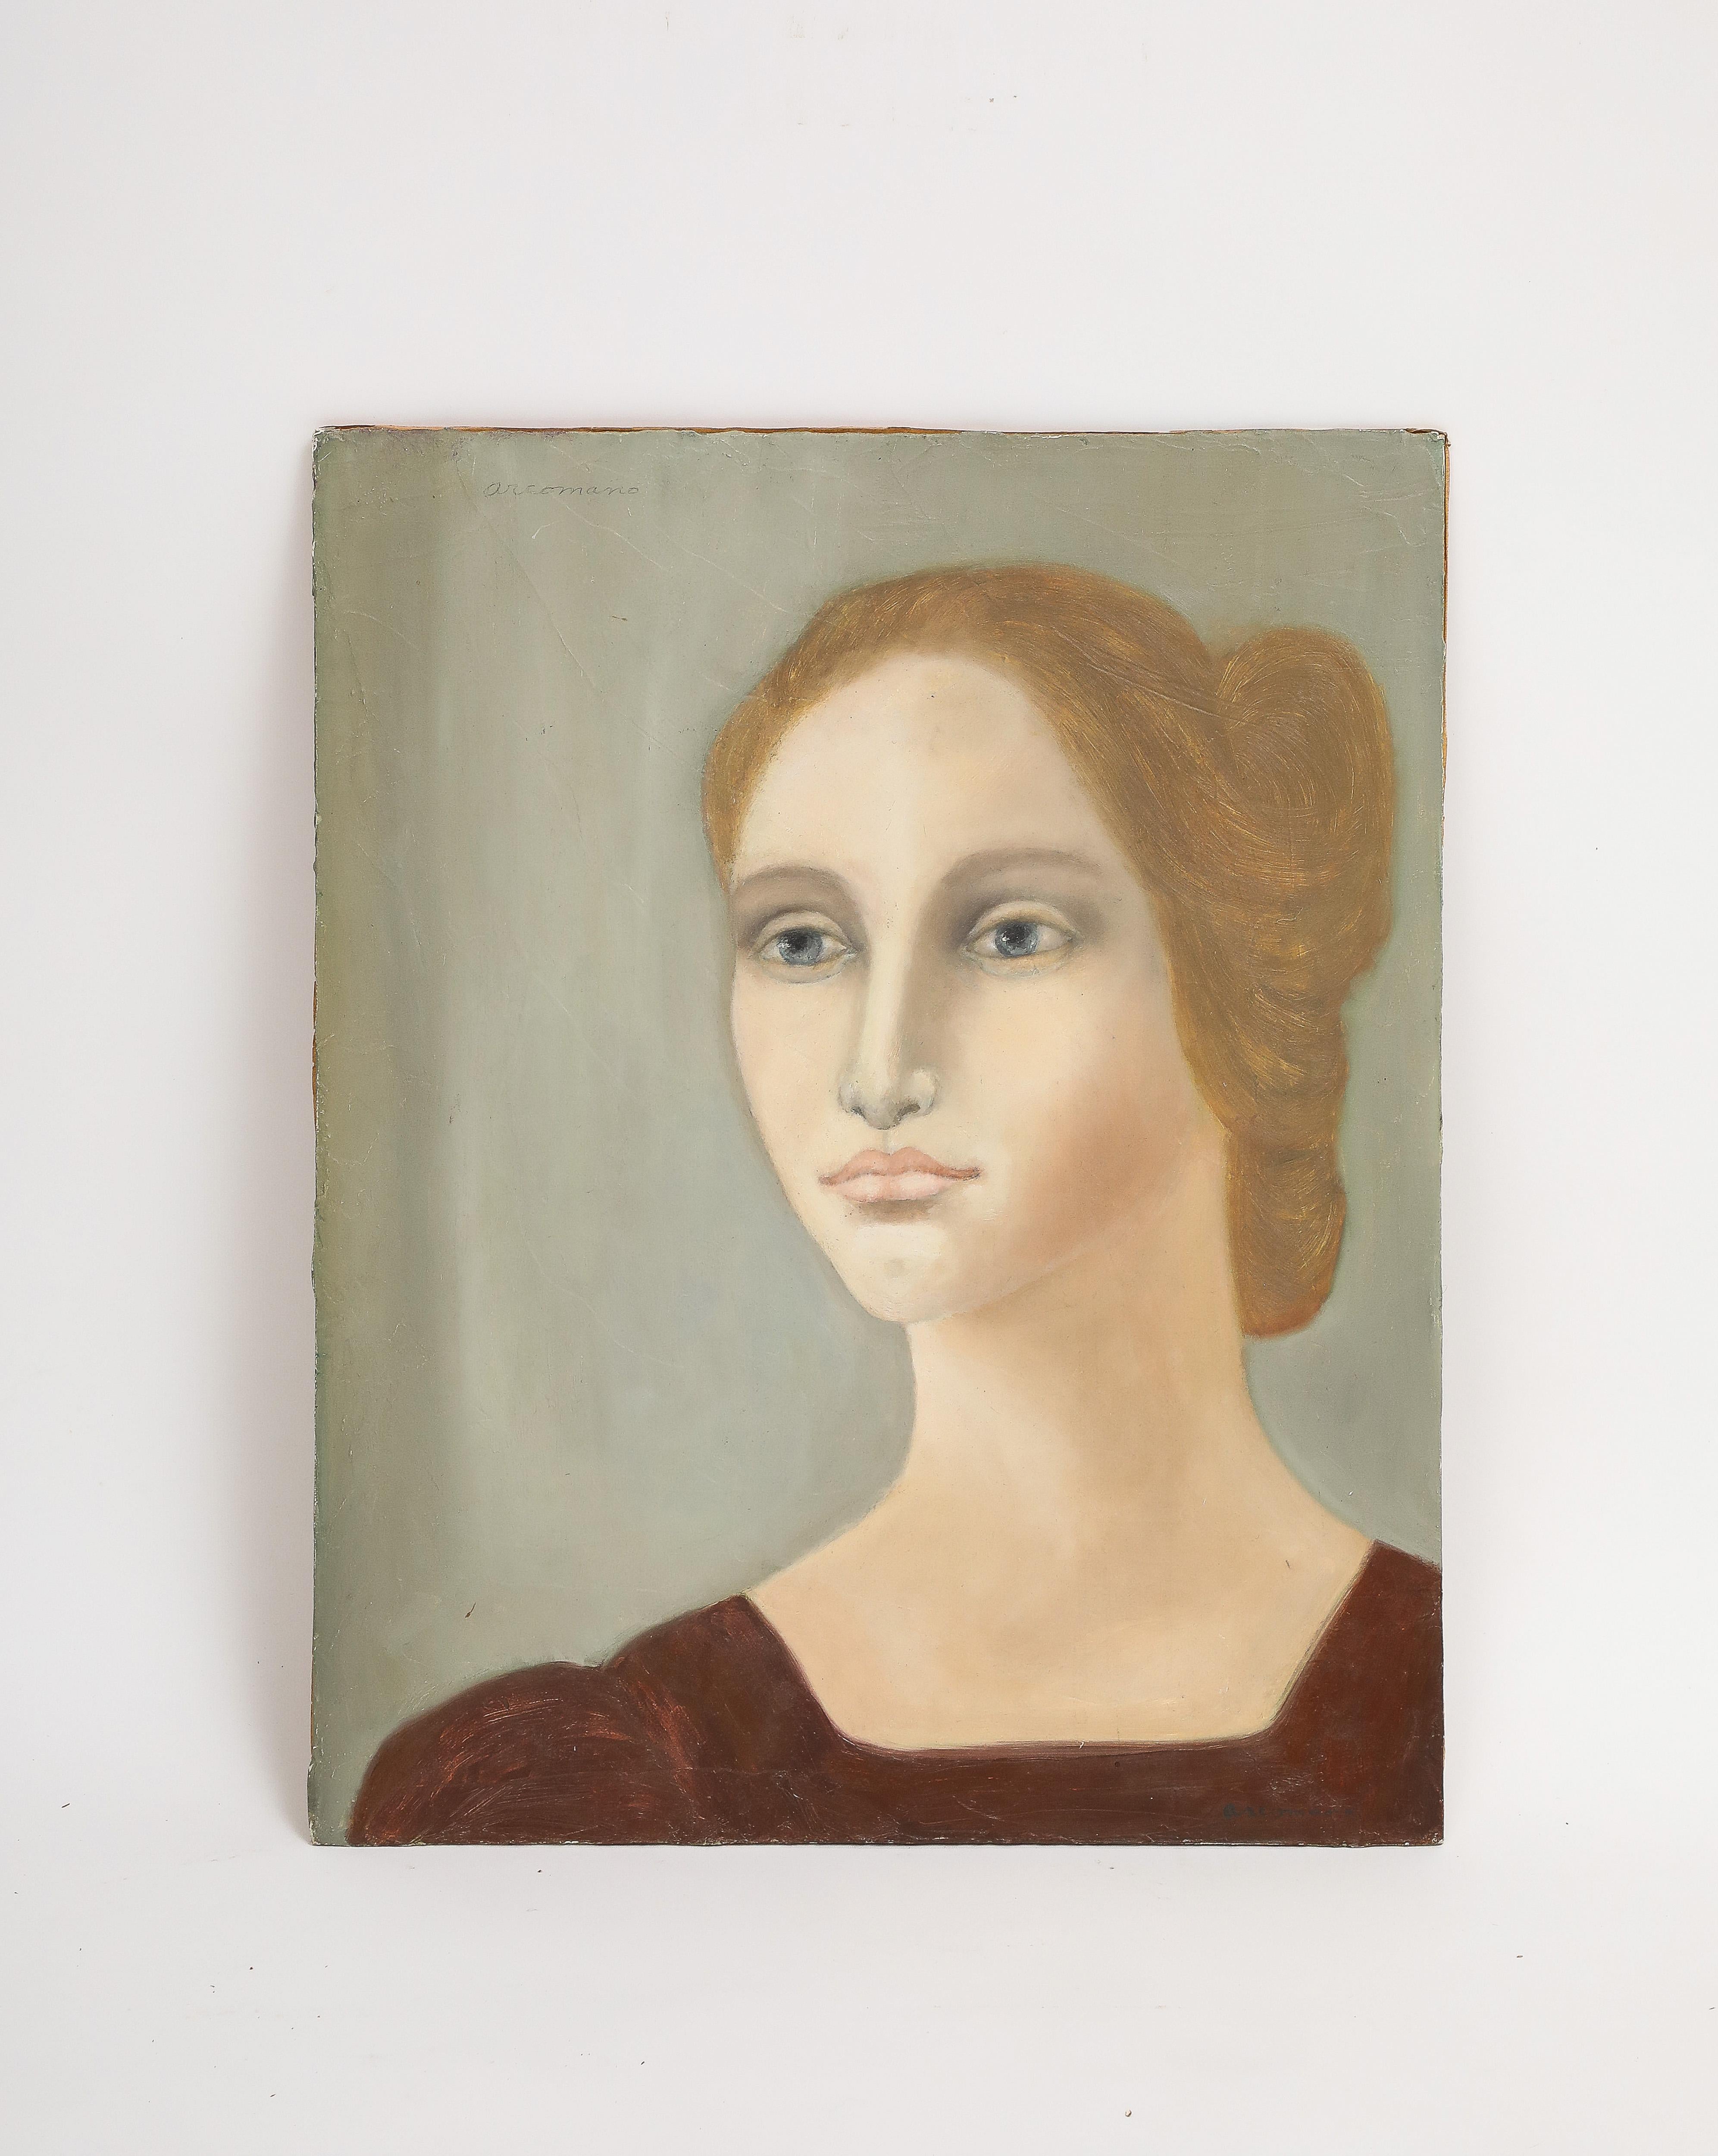 Portrait de femme par Cathryn Arcomano, huile sur toile, signée 1972. Numéroté 5. 

Il s'agit d'un portrait original peint à l'huile sur panneau de toile par l'artiste Cathryn Buckley Arcomano (américaine, 1923-2012). Artistics était un artiste